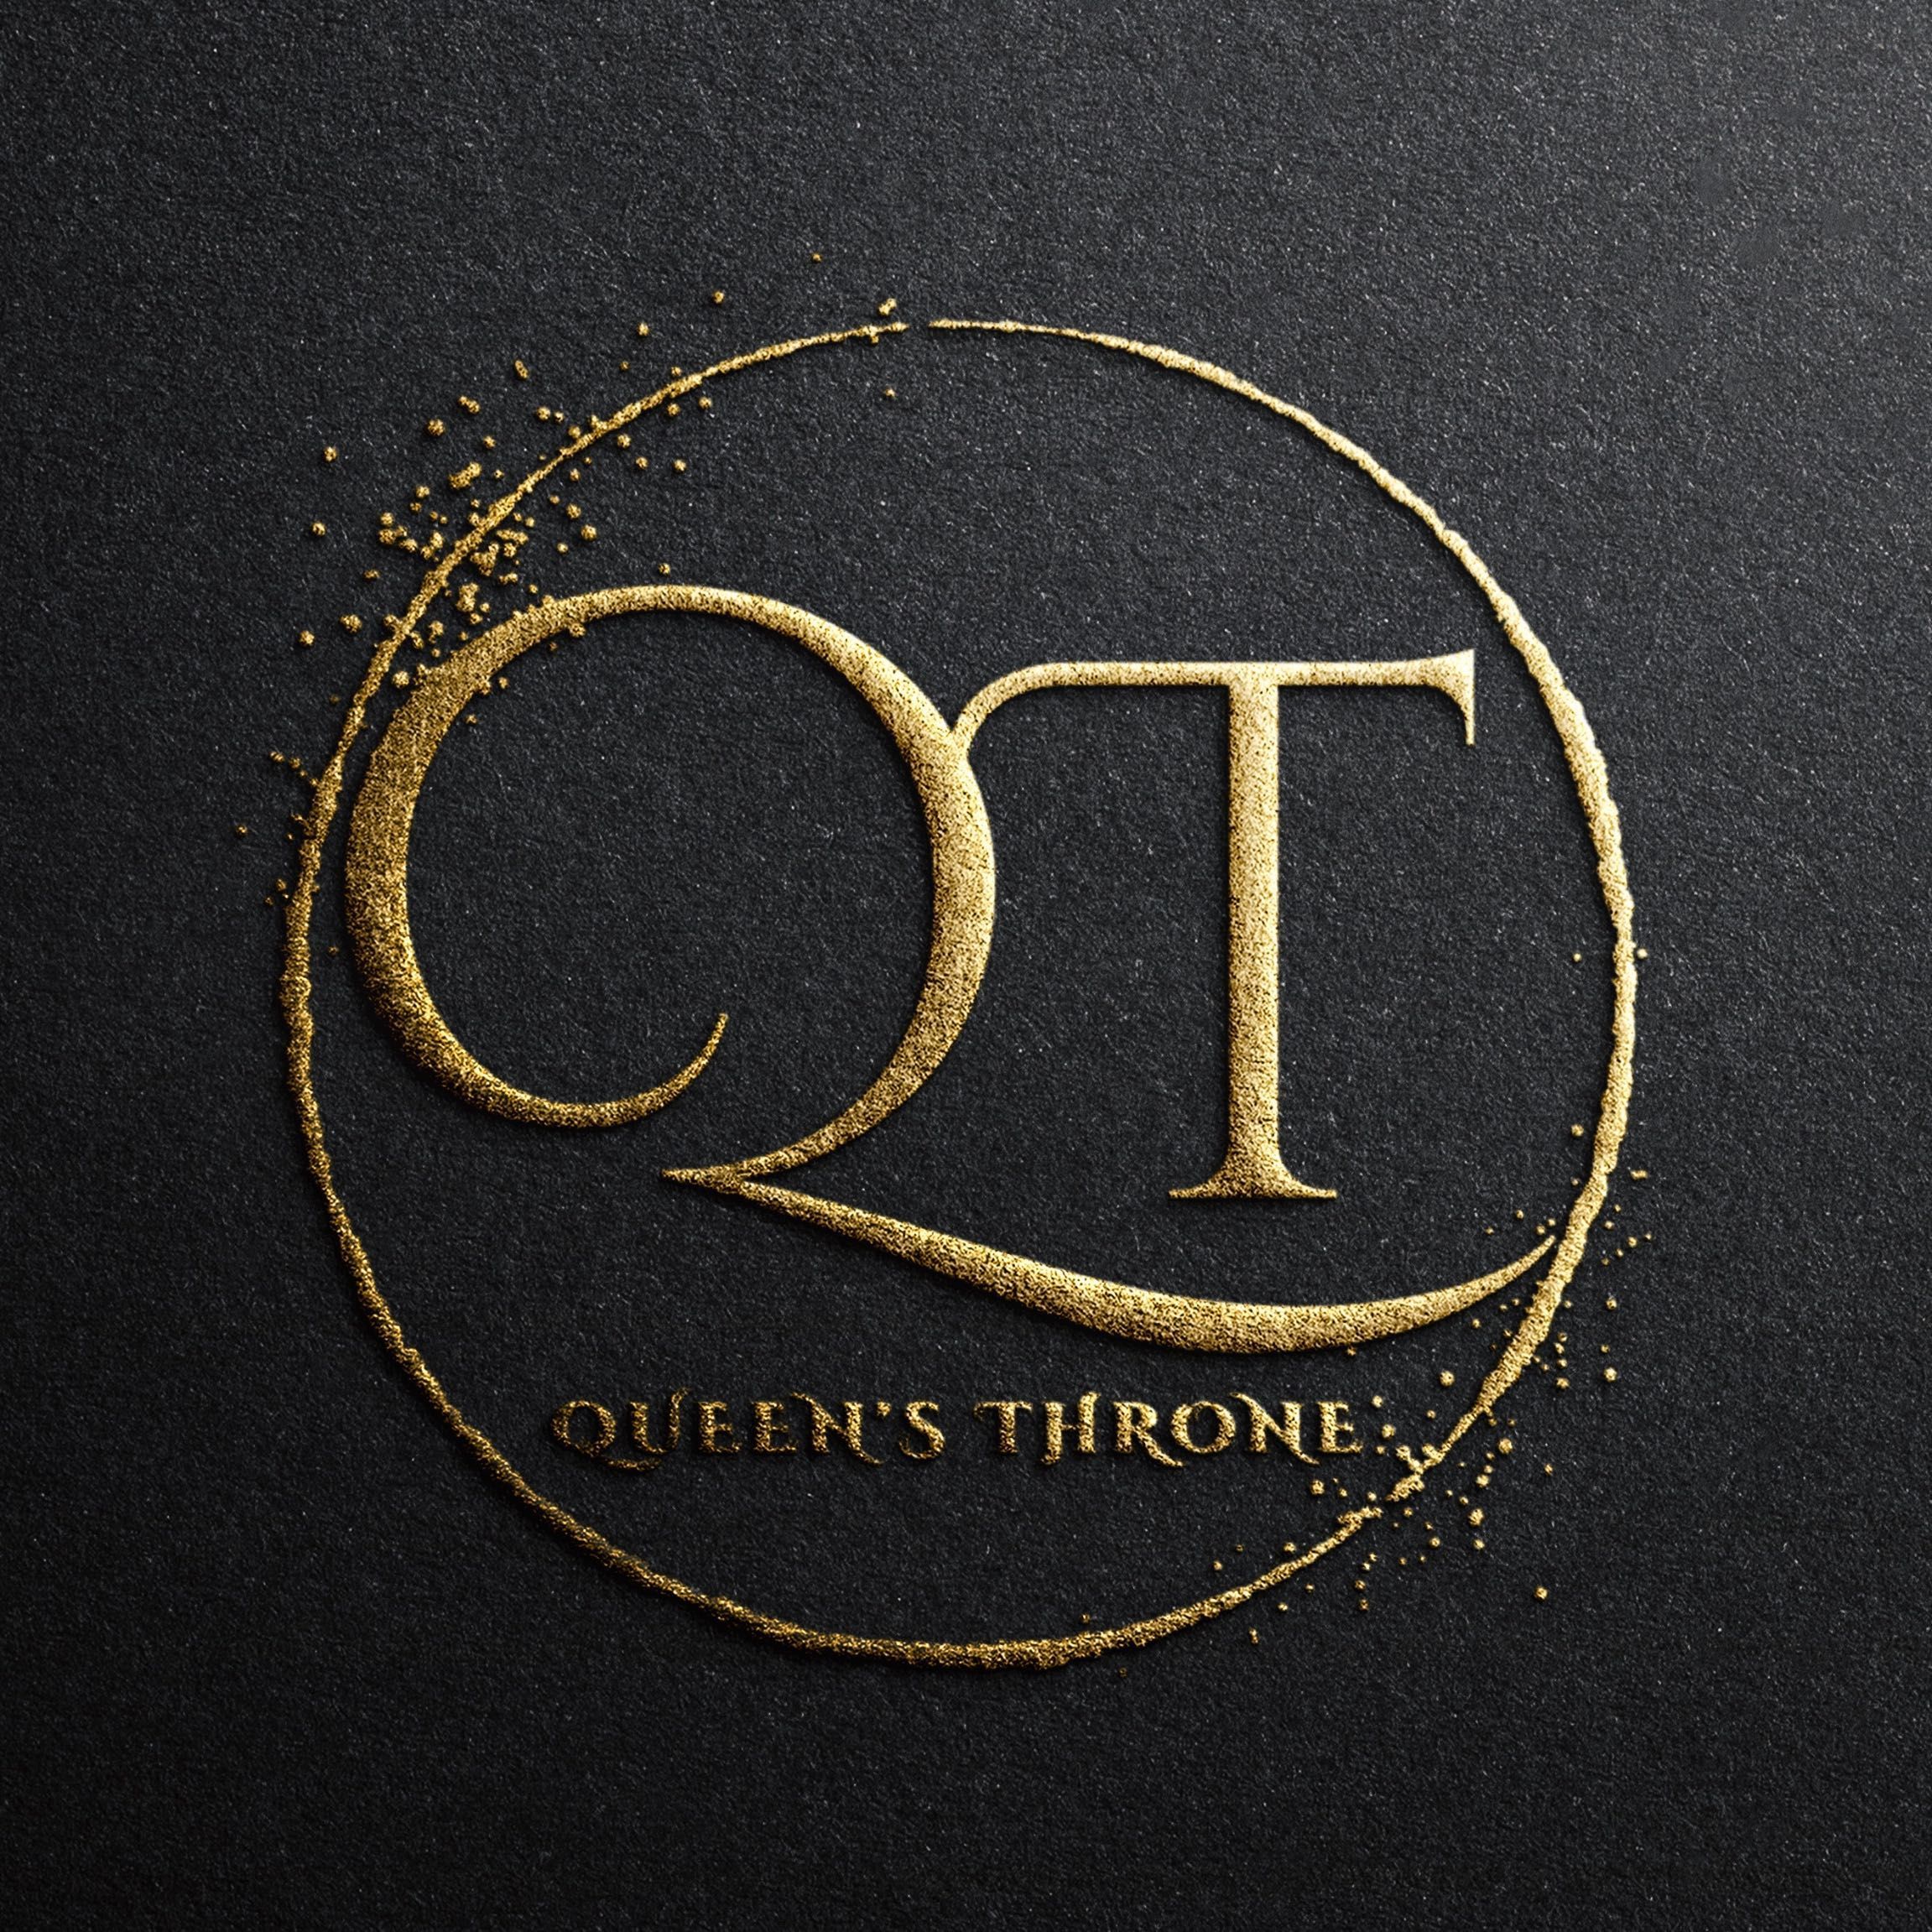 Queen’s Throne LLC, 2212, League City, 77573